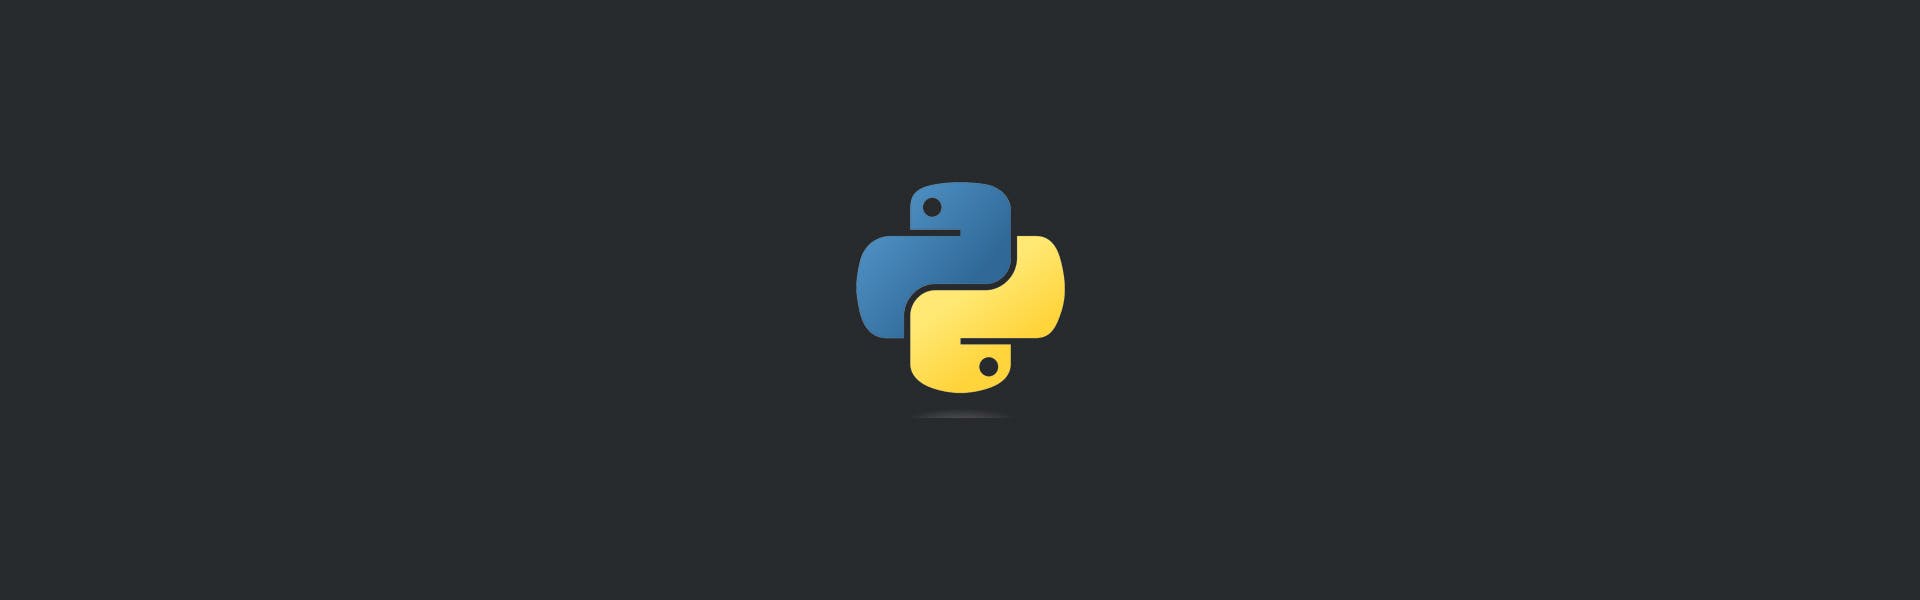 ¿Cómo hacer scrapping con Python 3?